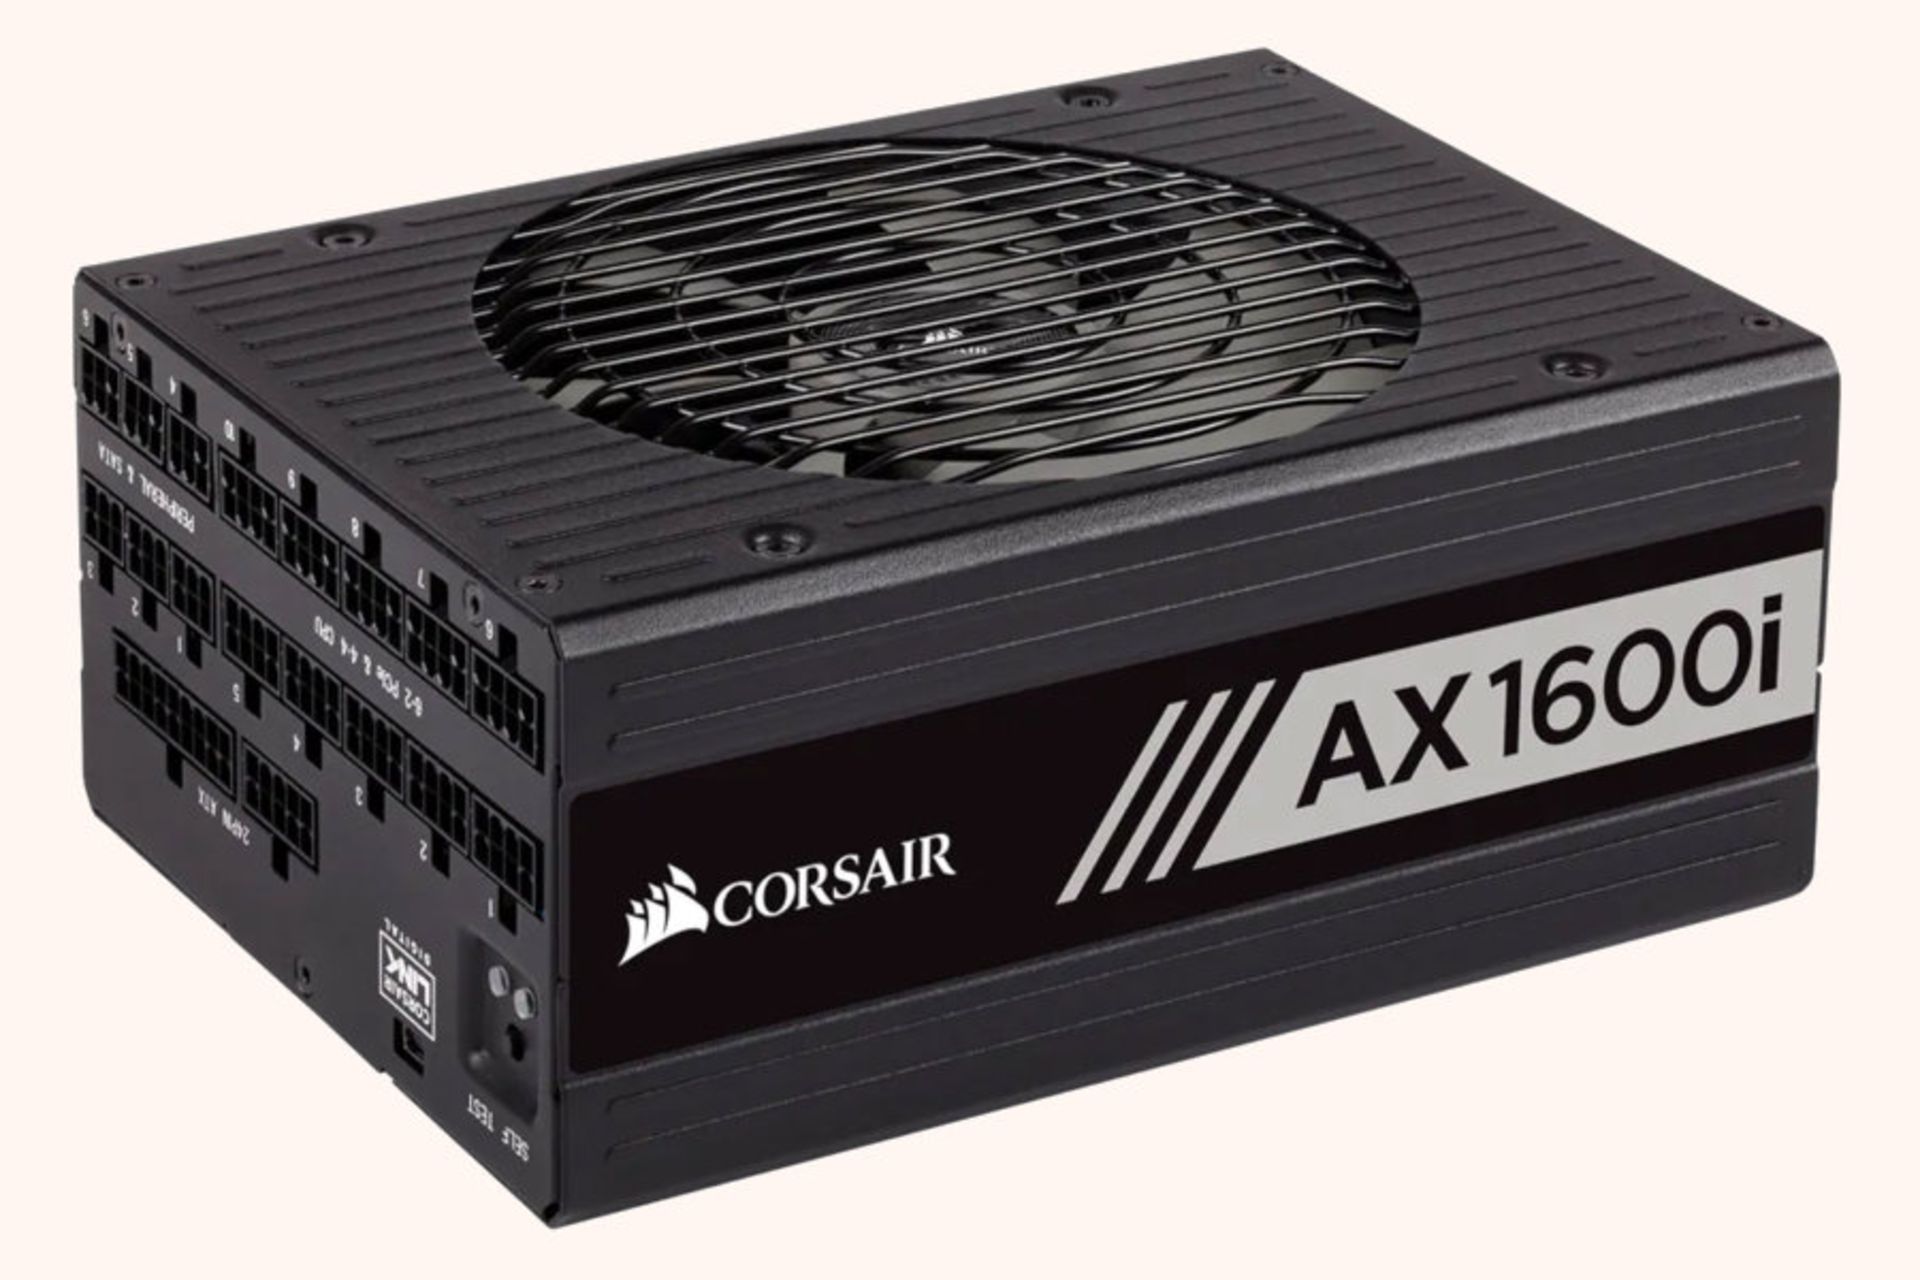 قیمت پاور کامپیوتر کورسیر AX1600i در بخش محصولات زومیت